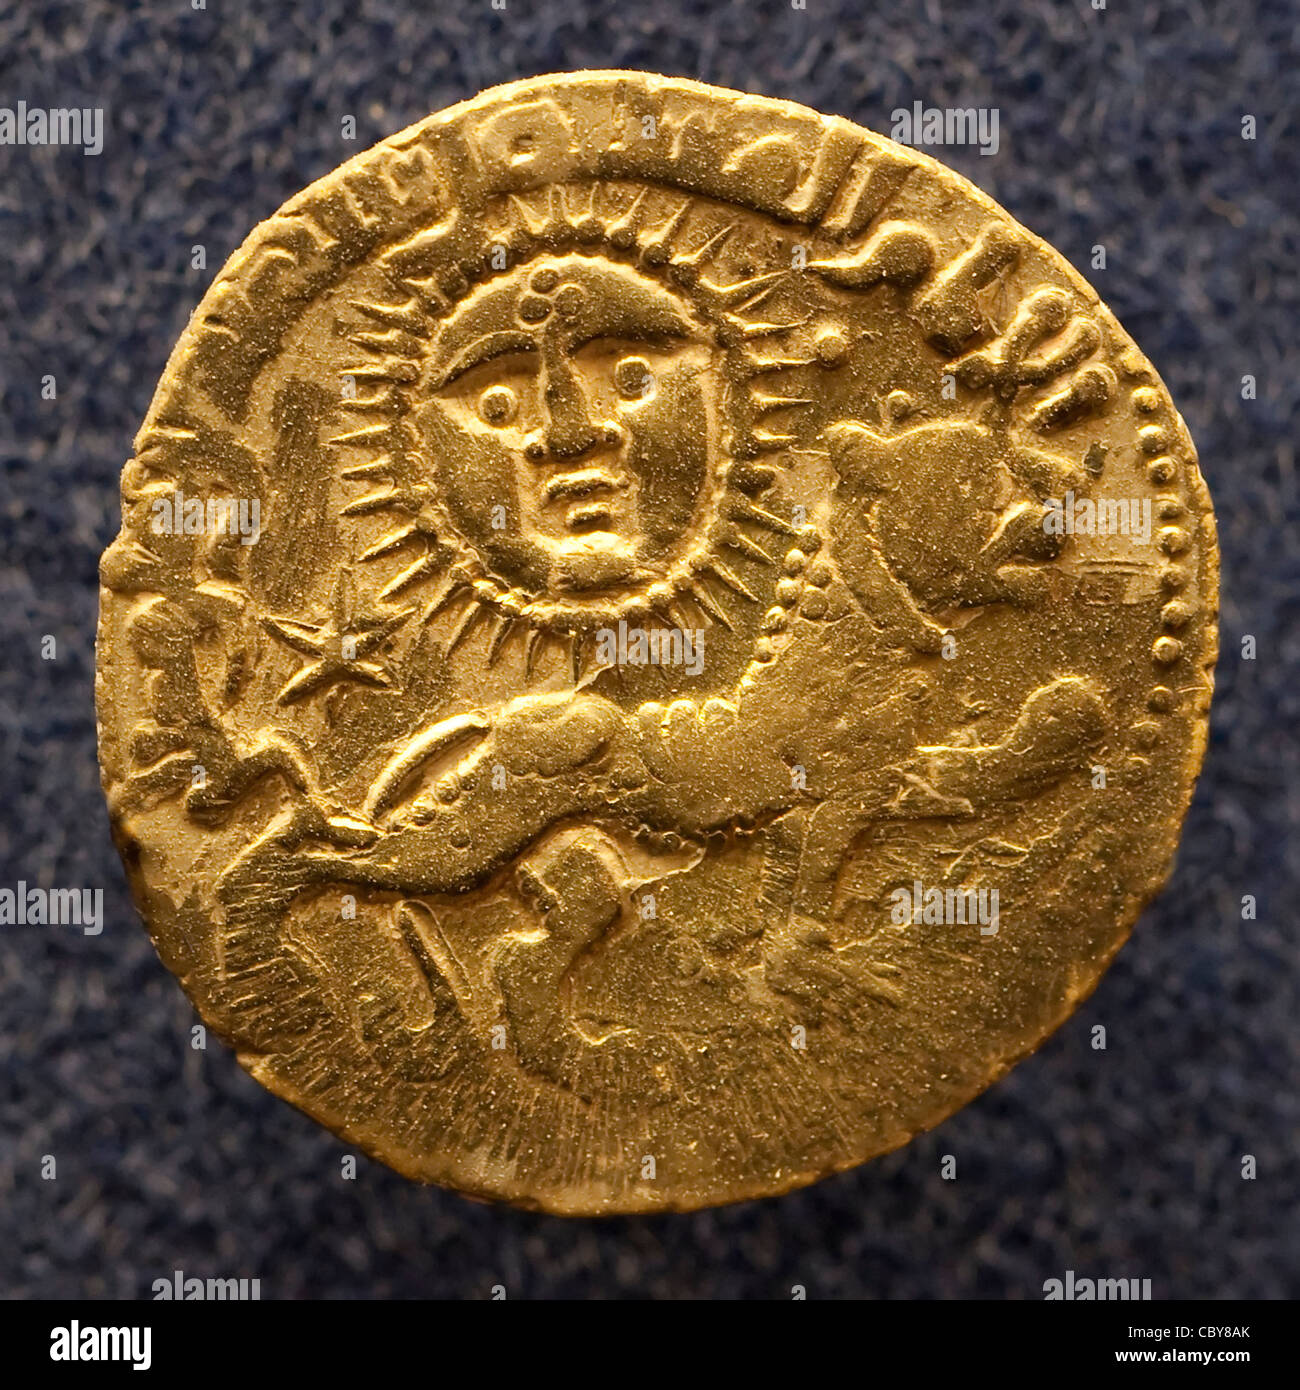 Alte Goldmünze aus der Seldschuken-Dynastie, die ein war Hohe mittelalterliche turko-persischen sunnitischen muslimischen Reich Darstellung eines Löwen und Die Sonne Stockfoto